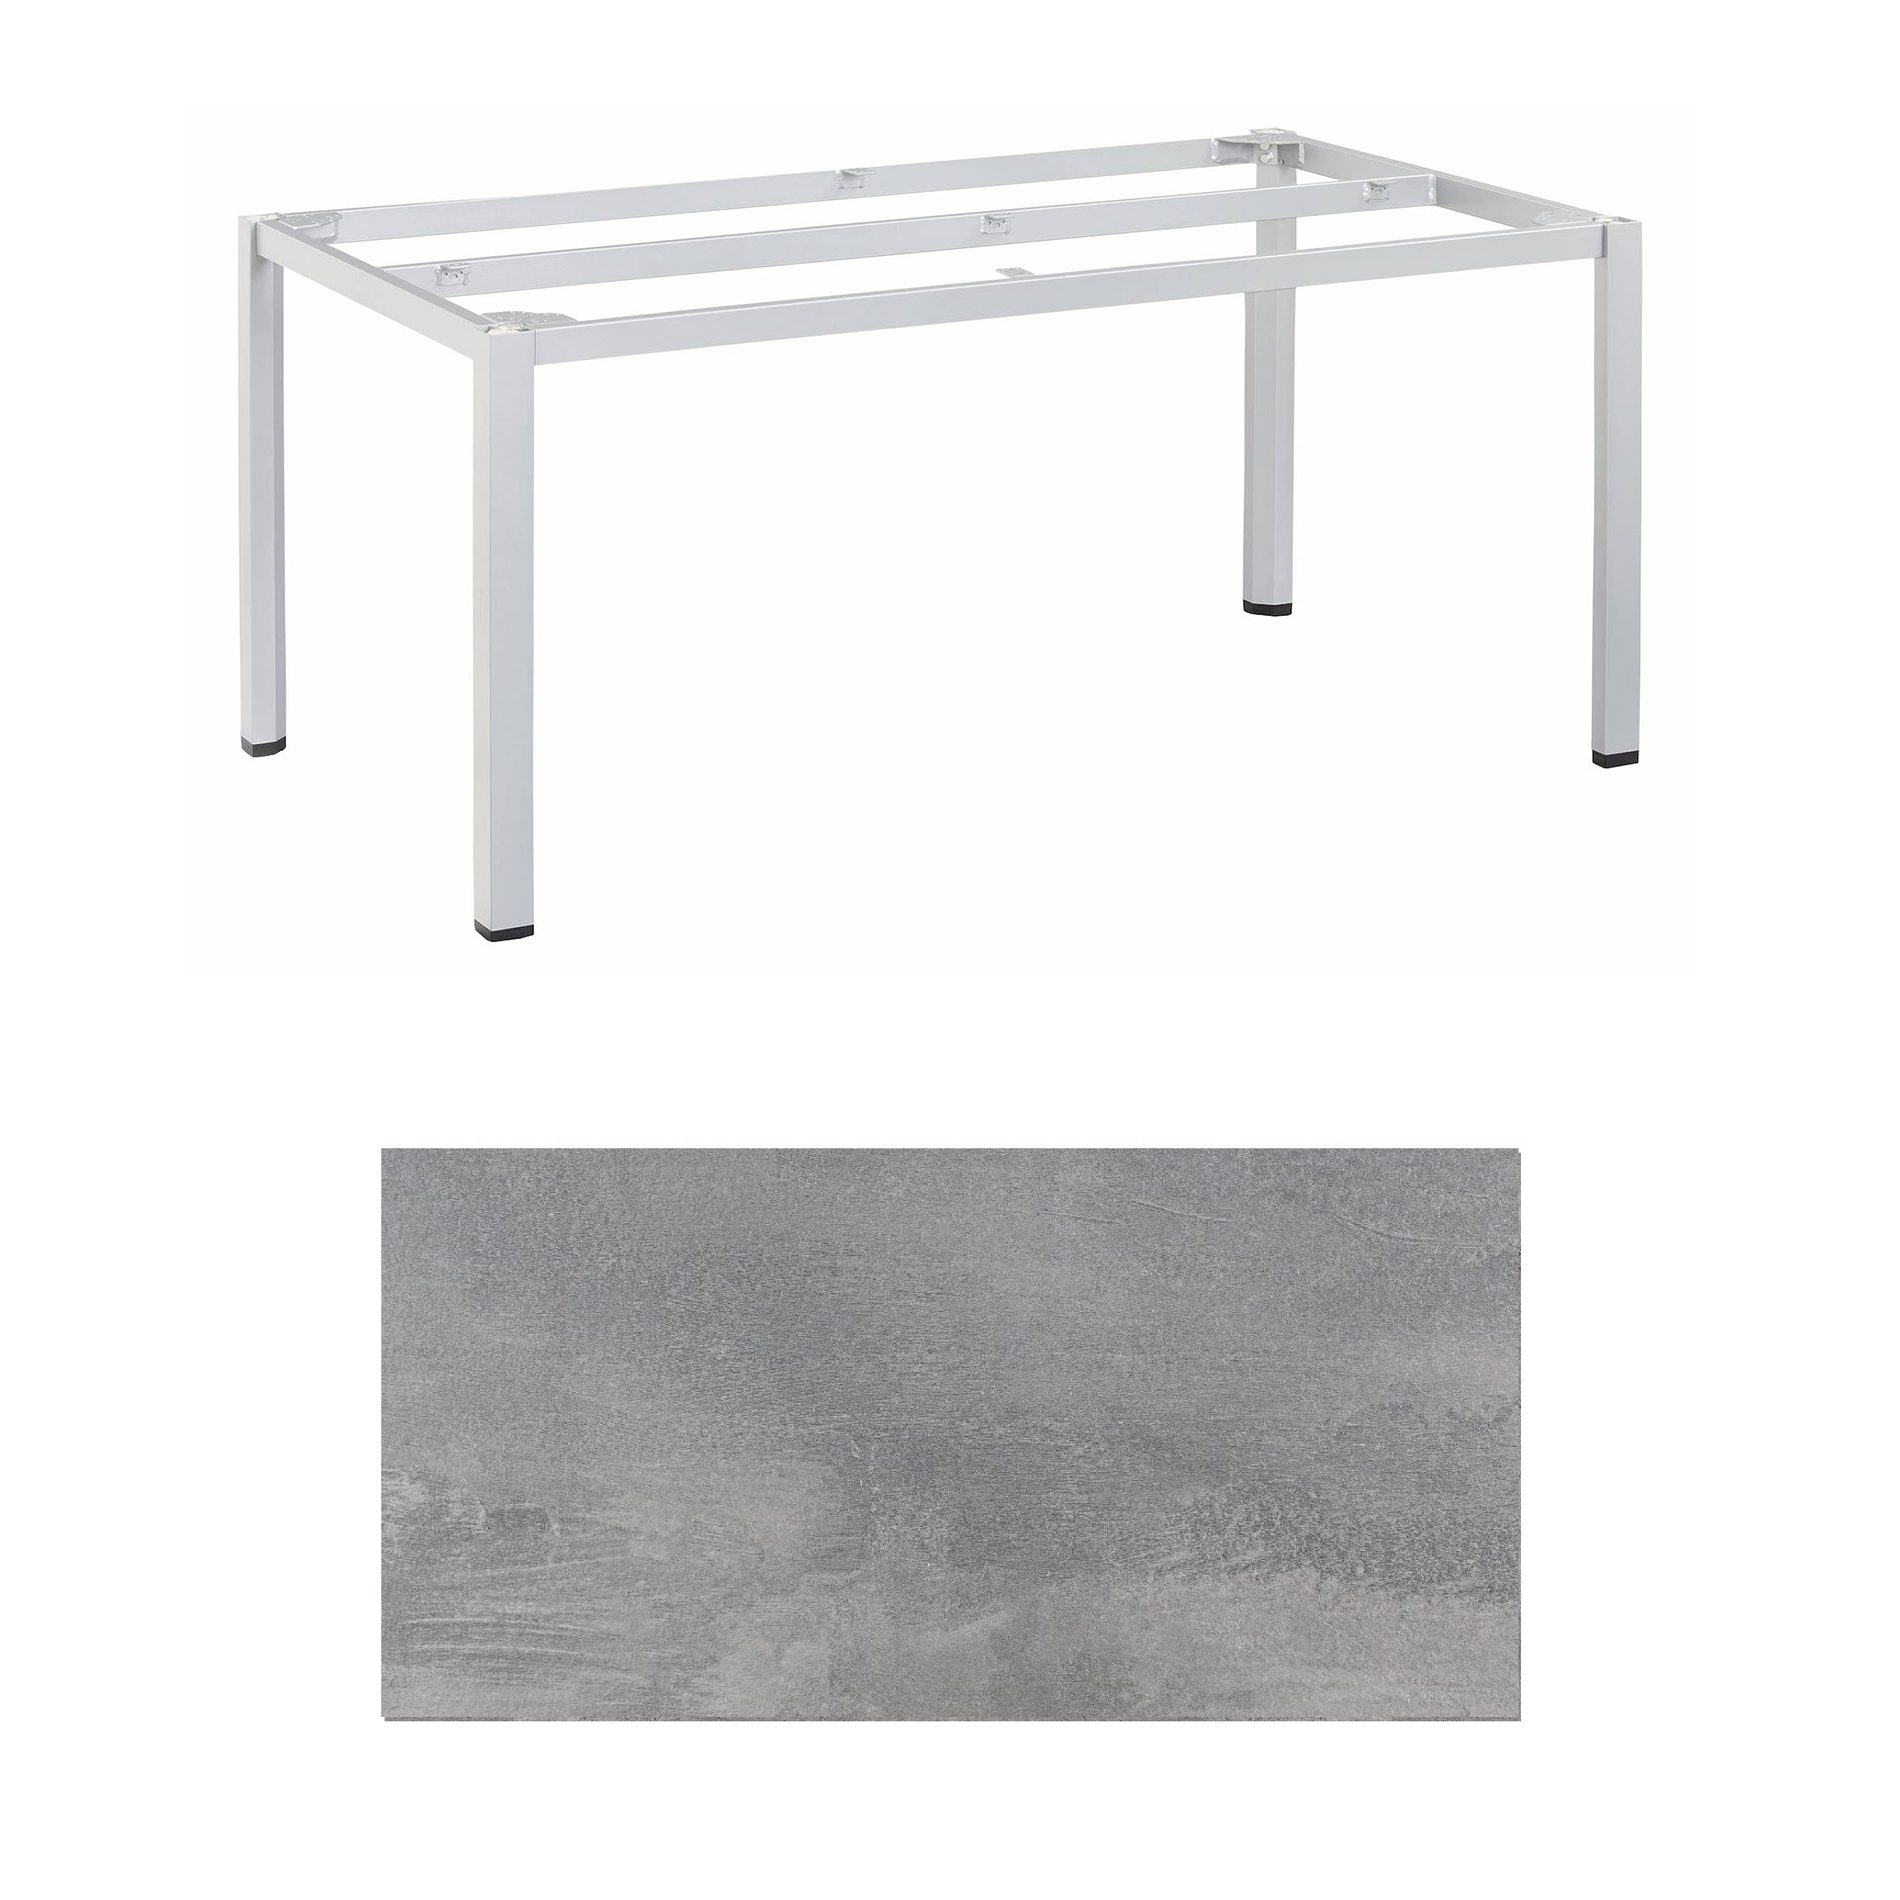 Kettler "Cubic" Tischgestell 180x95 cm, Aluminium silber mit HPL-Platte silber-grau